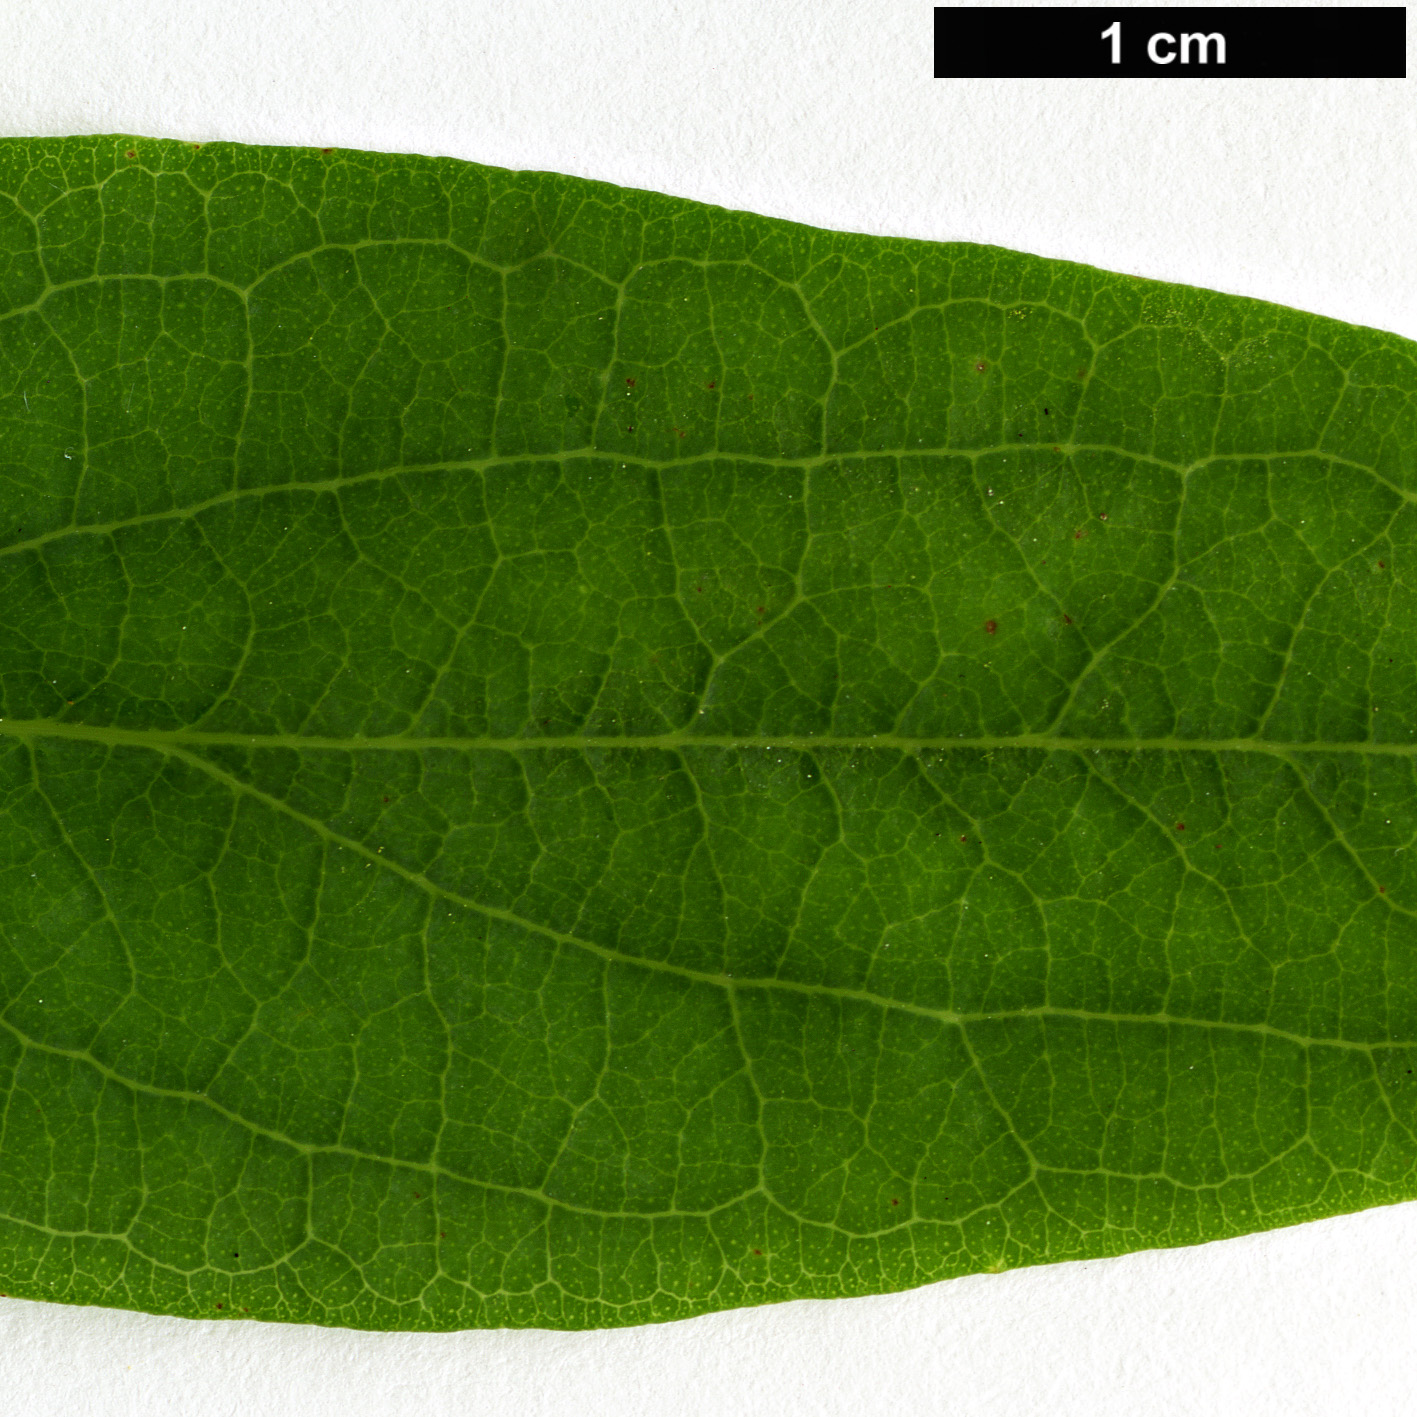 High resolution image: Family: Hypericaceae - Genus: Hypericum - Taxon: hircinum - SpeciesSub: subsp. majus